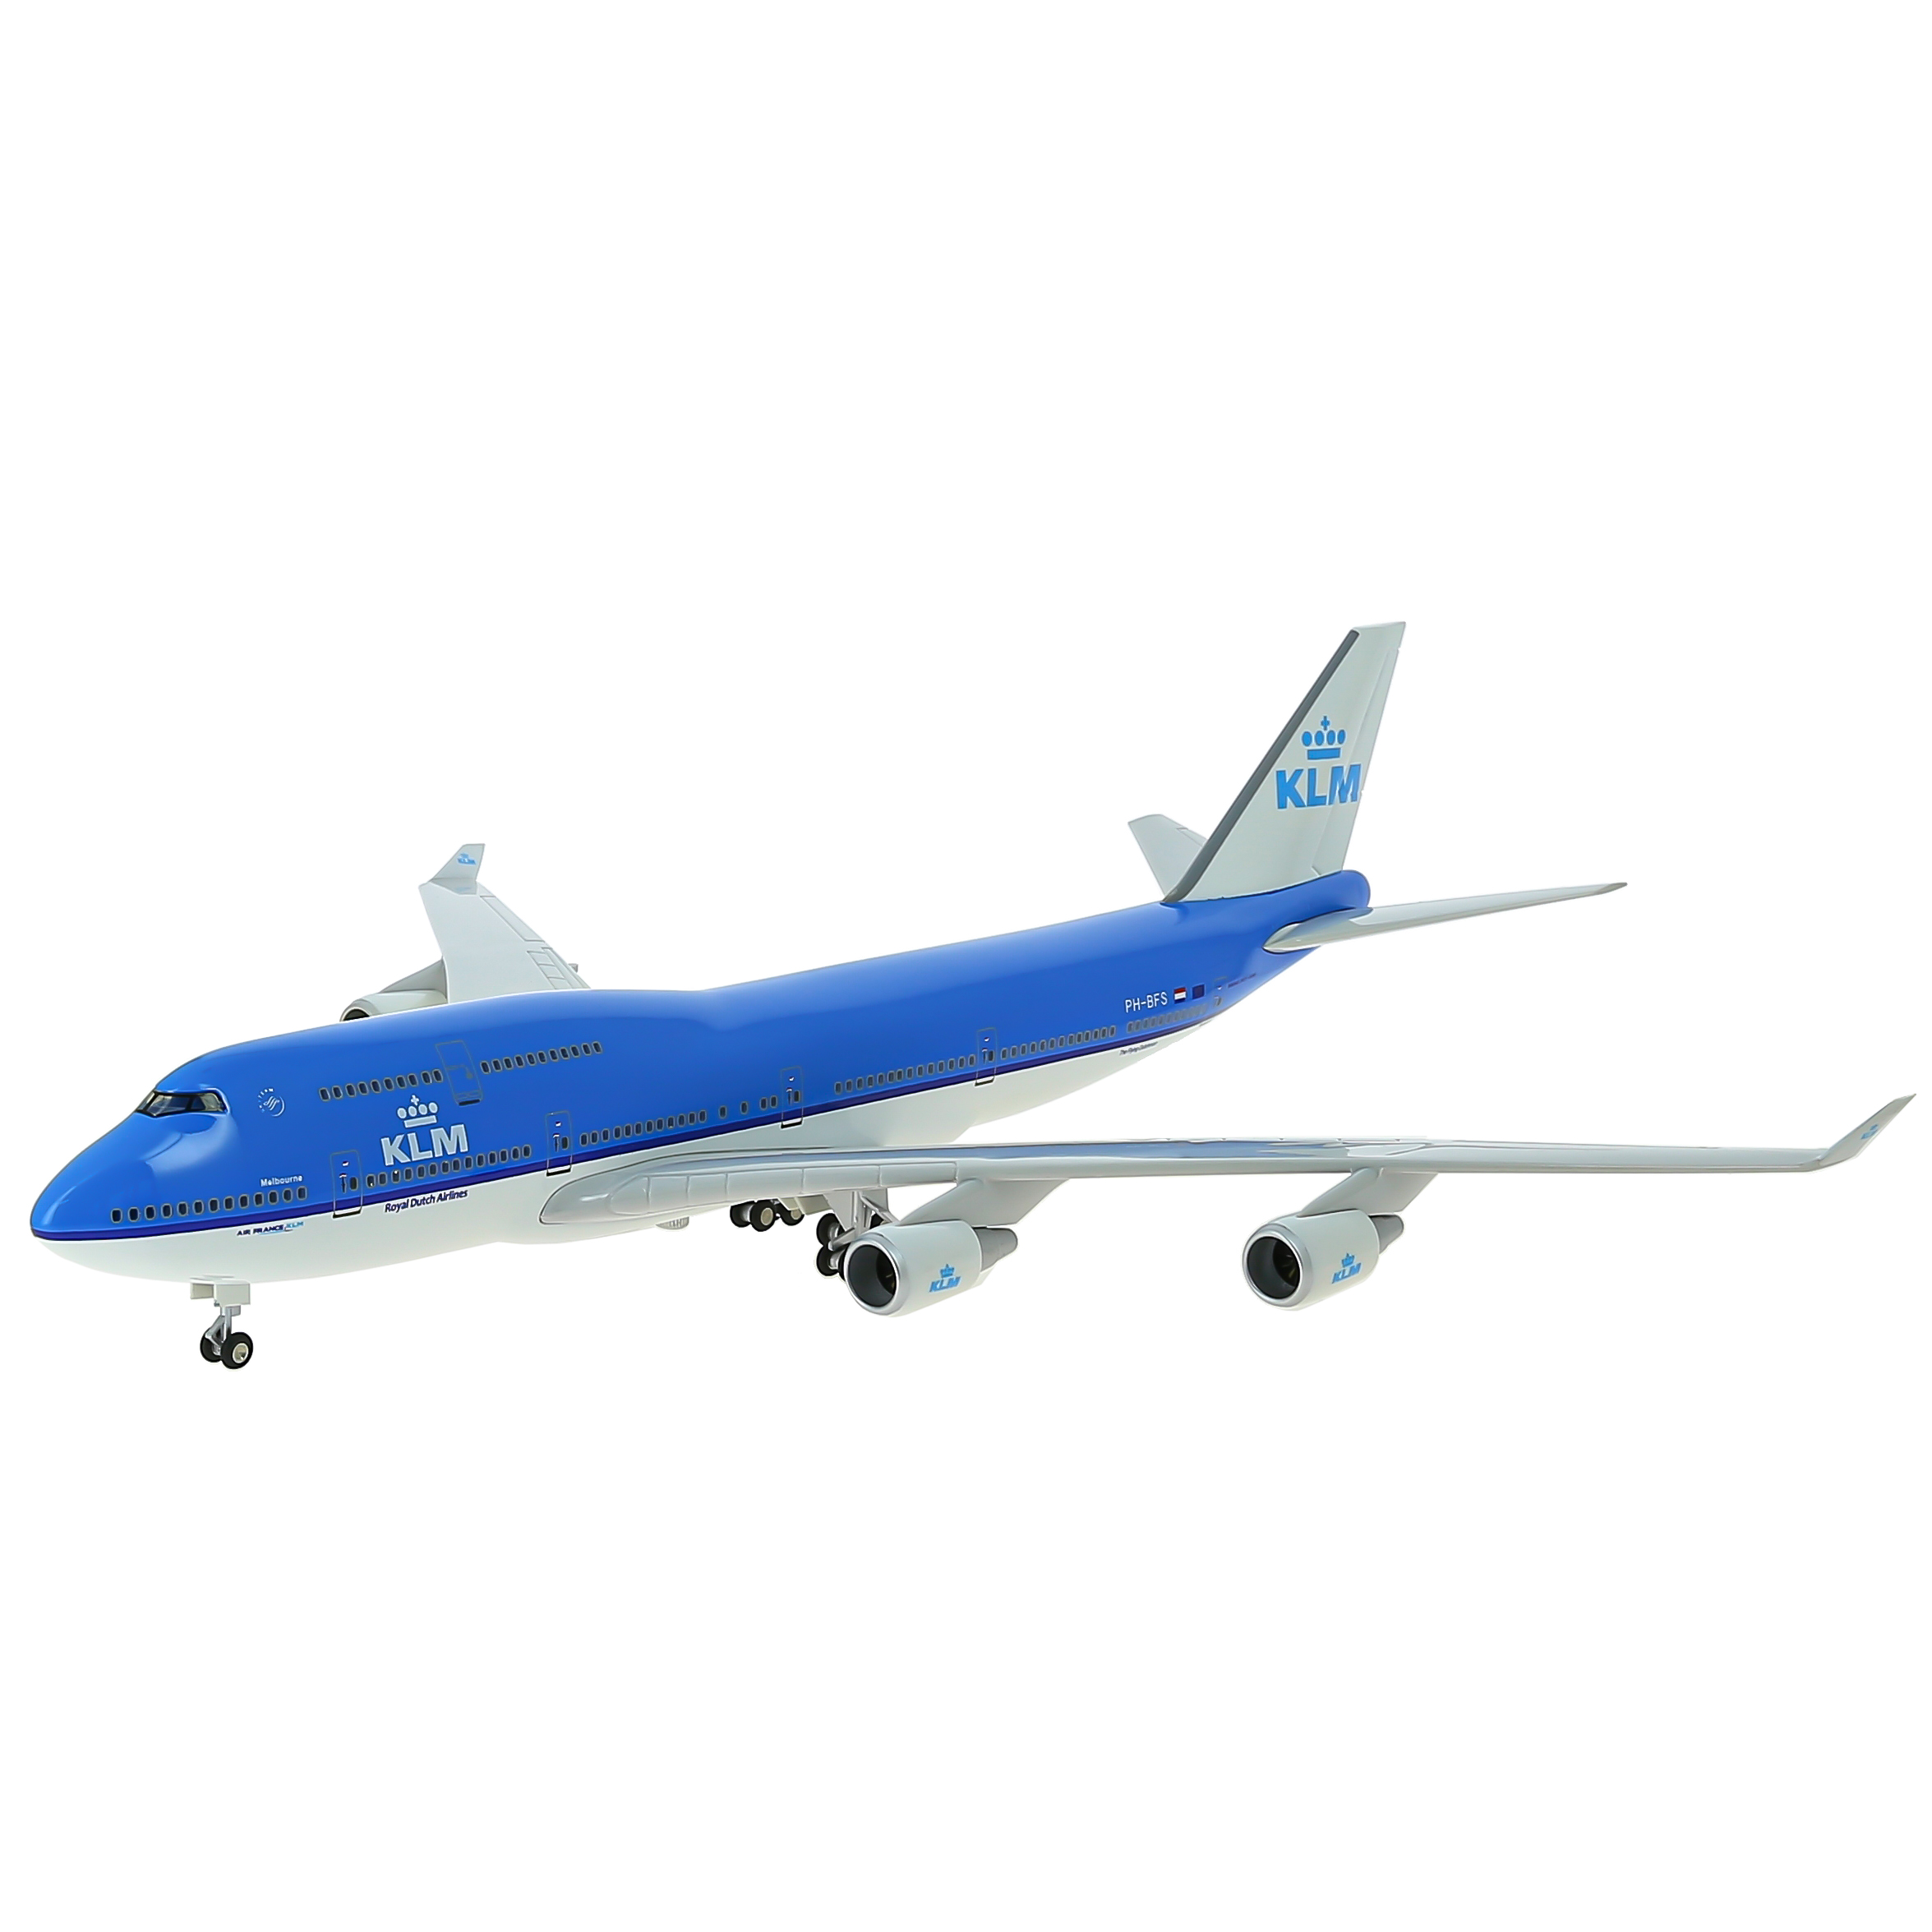     747  KLM,   .  47 . # 4 hobbyplus.ru